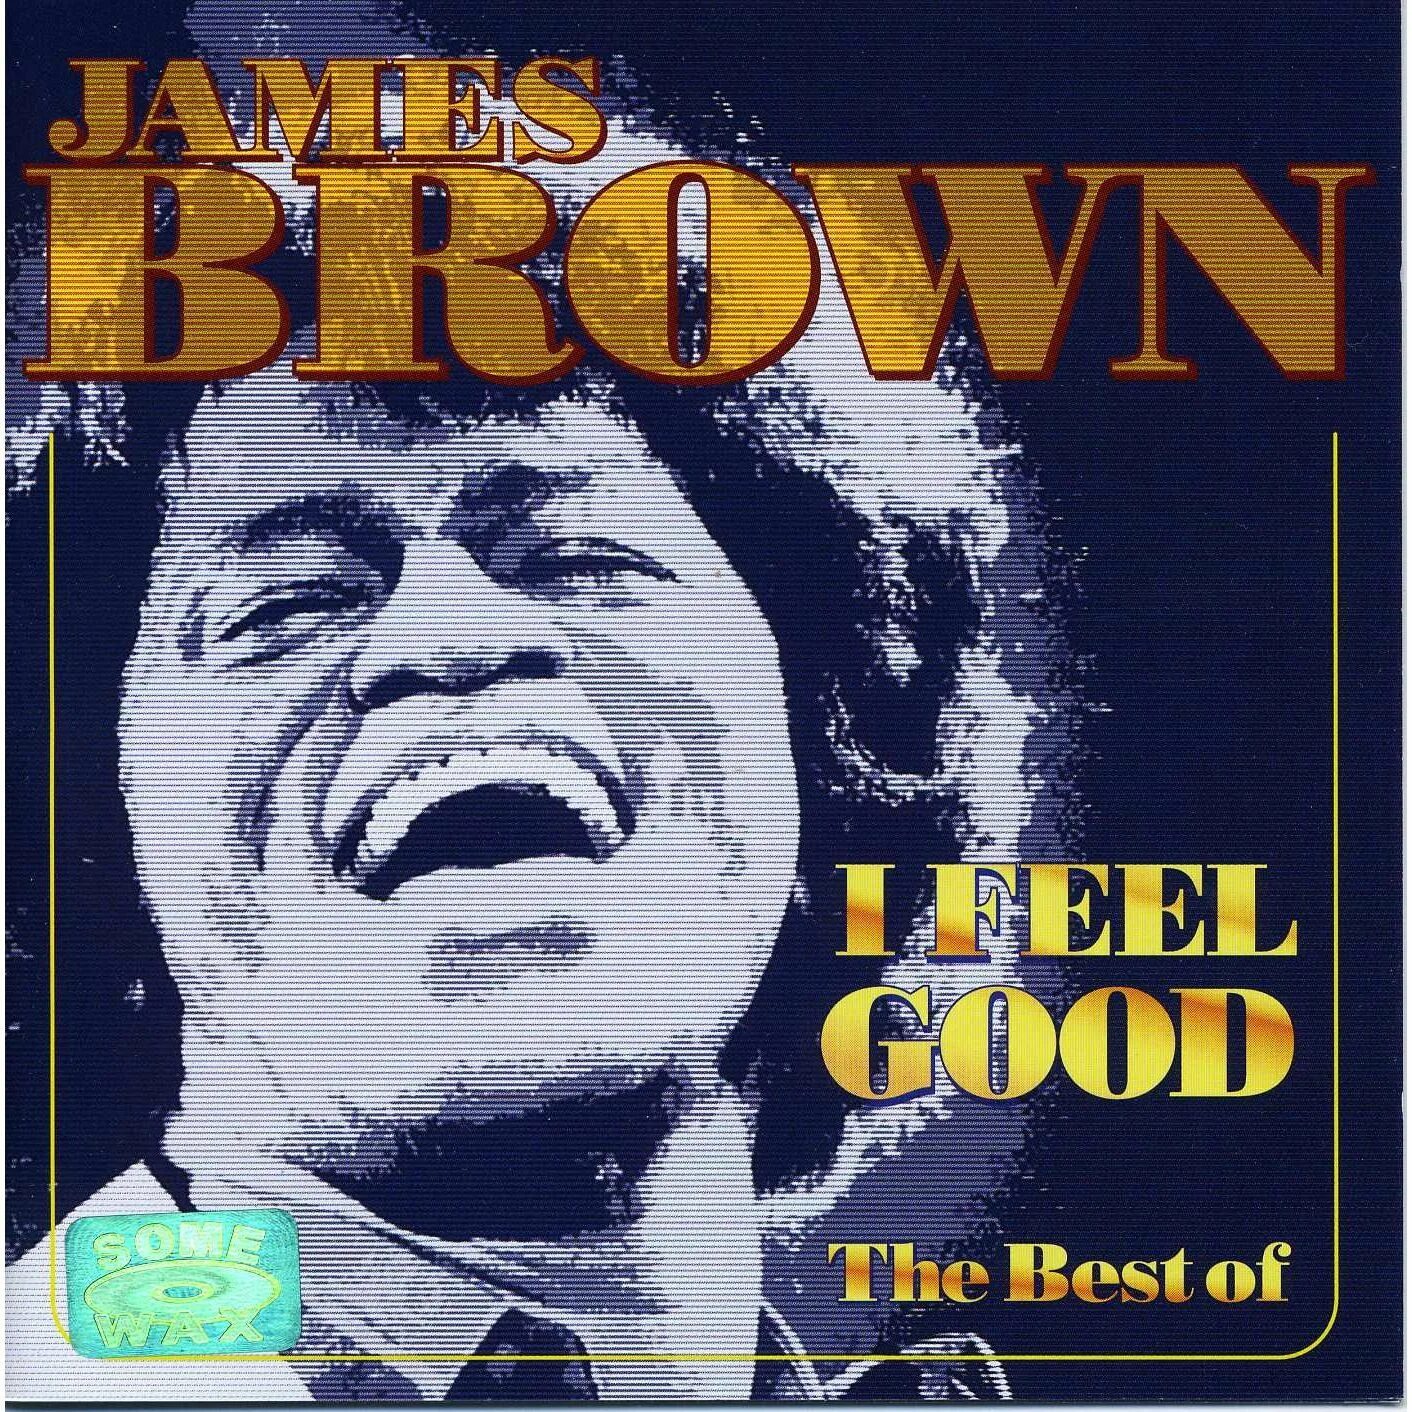 I can brown. I feel good James Brown обложка. I got you (i feel good) Джеймса Брауна. James Brown i got you (i feel good) обложка.